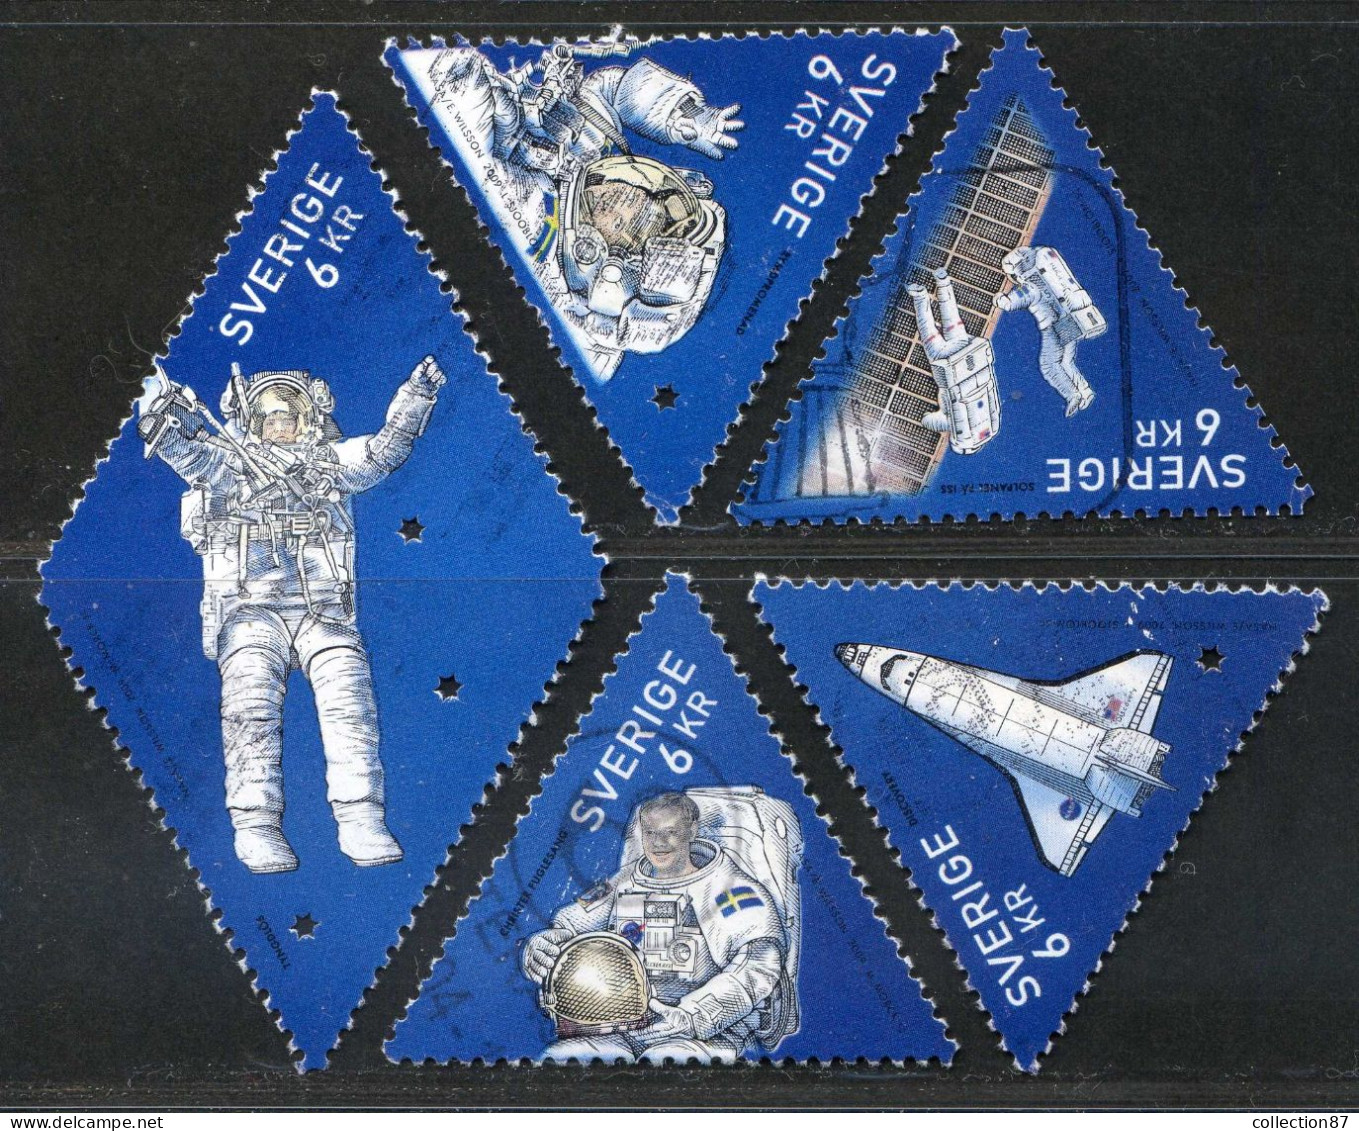 Réf 77 < SUEDE < Yvert N° 2696 à 2700 Ø < Année 2009 Used SWEDEN < Espace Christer Fuglesang Premier Astronaute Suédois - Usati